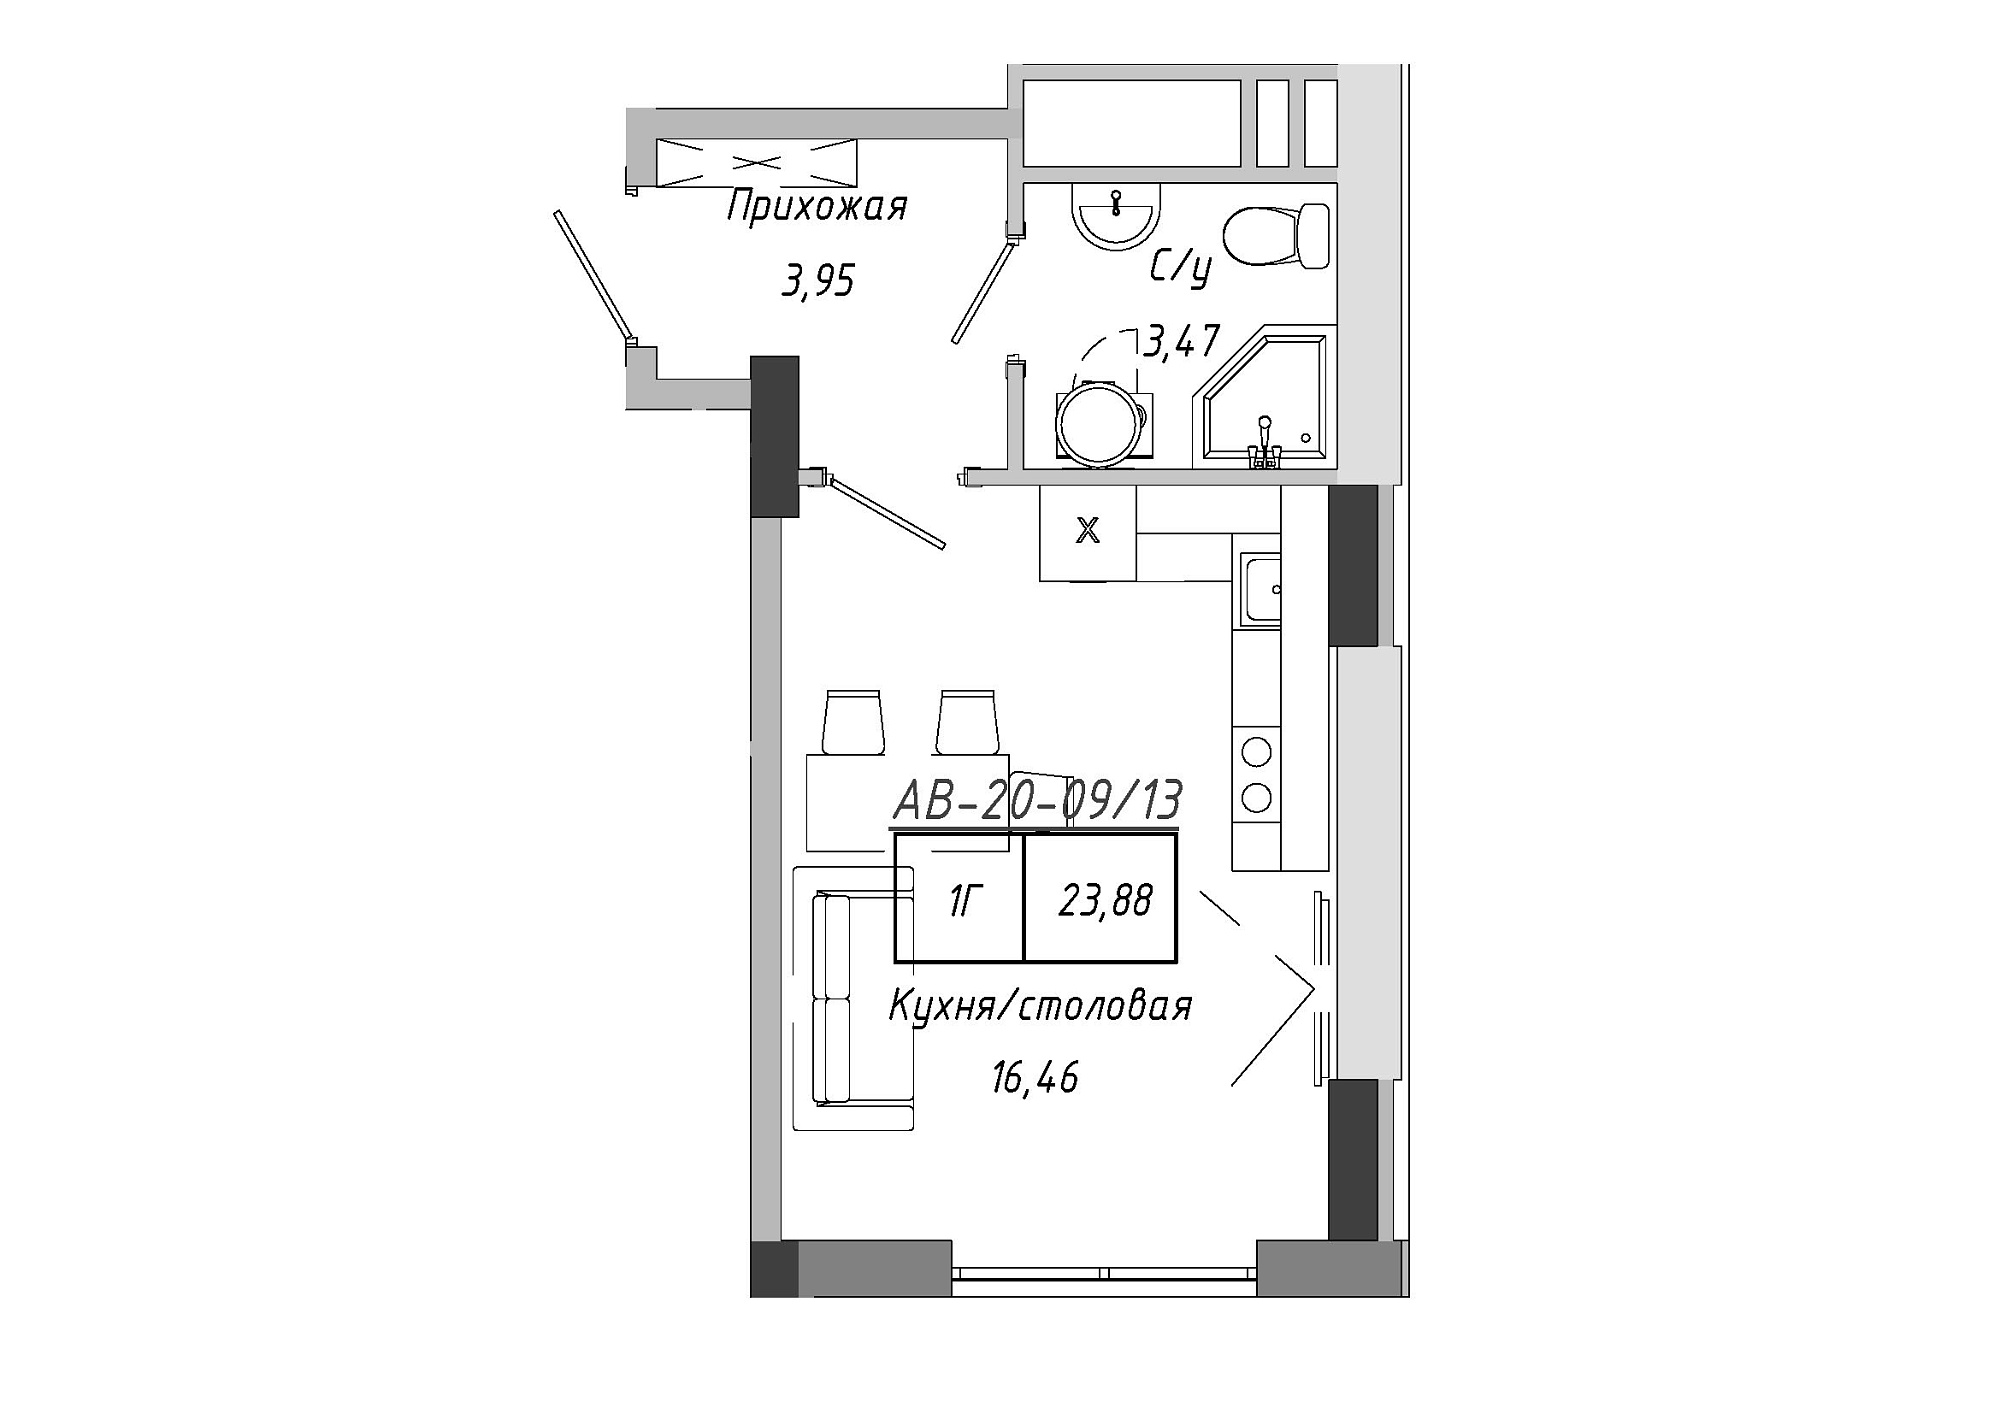 Планування Smart-квартира площею 23.4м2, AB-20-09/00013.